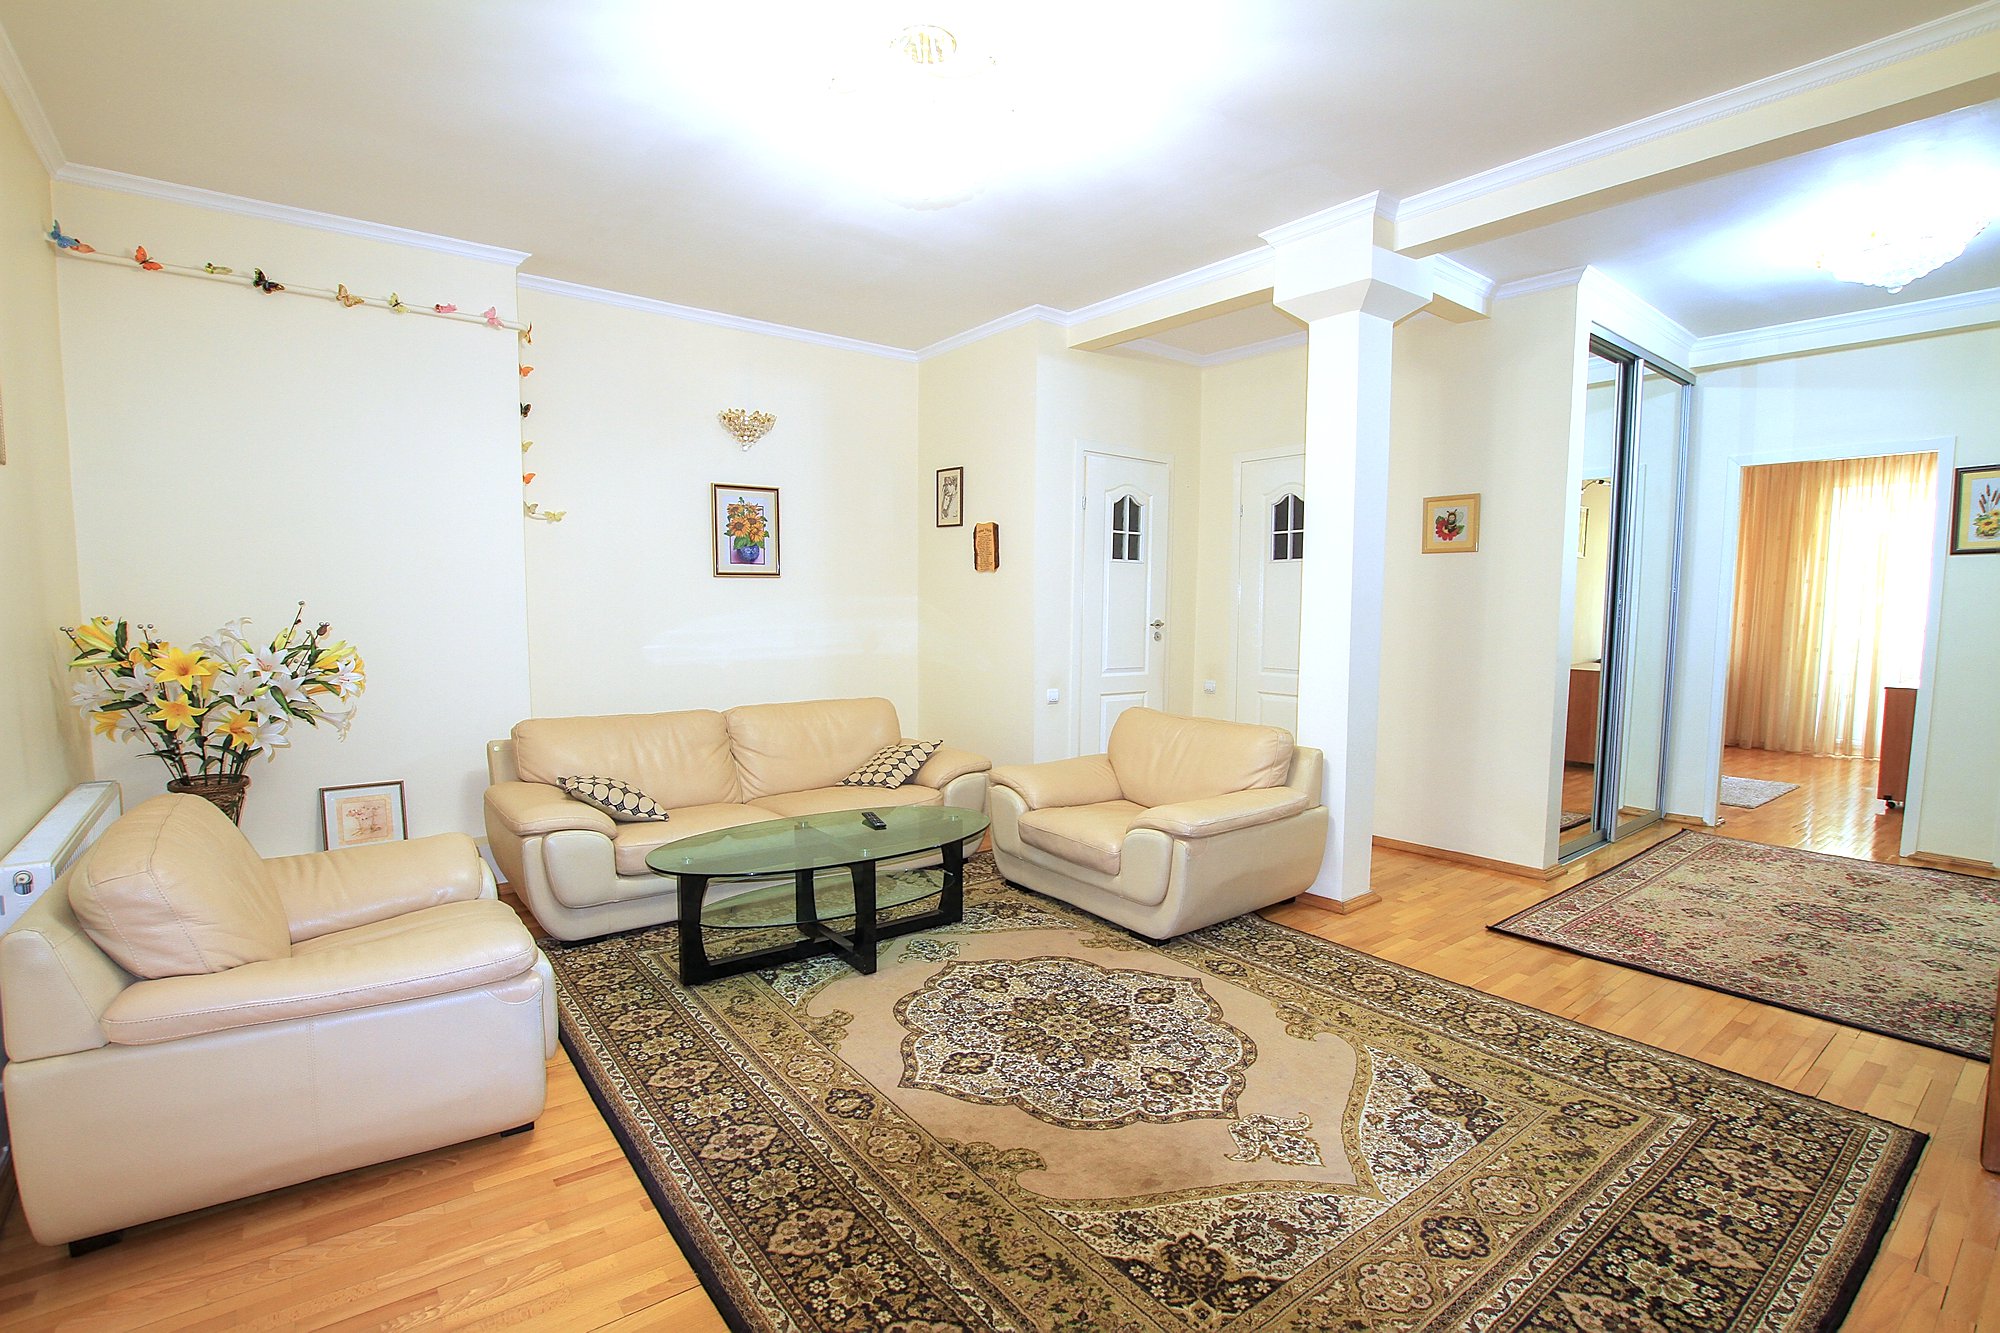 Downtown Lease es un apartamento de 3 habitaciones en alquiler en Chisinau, Moldova